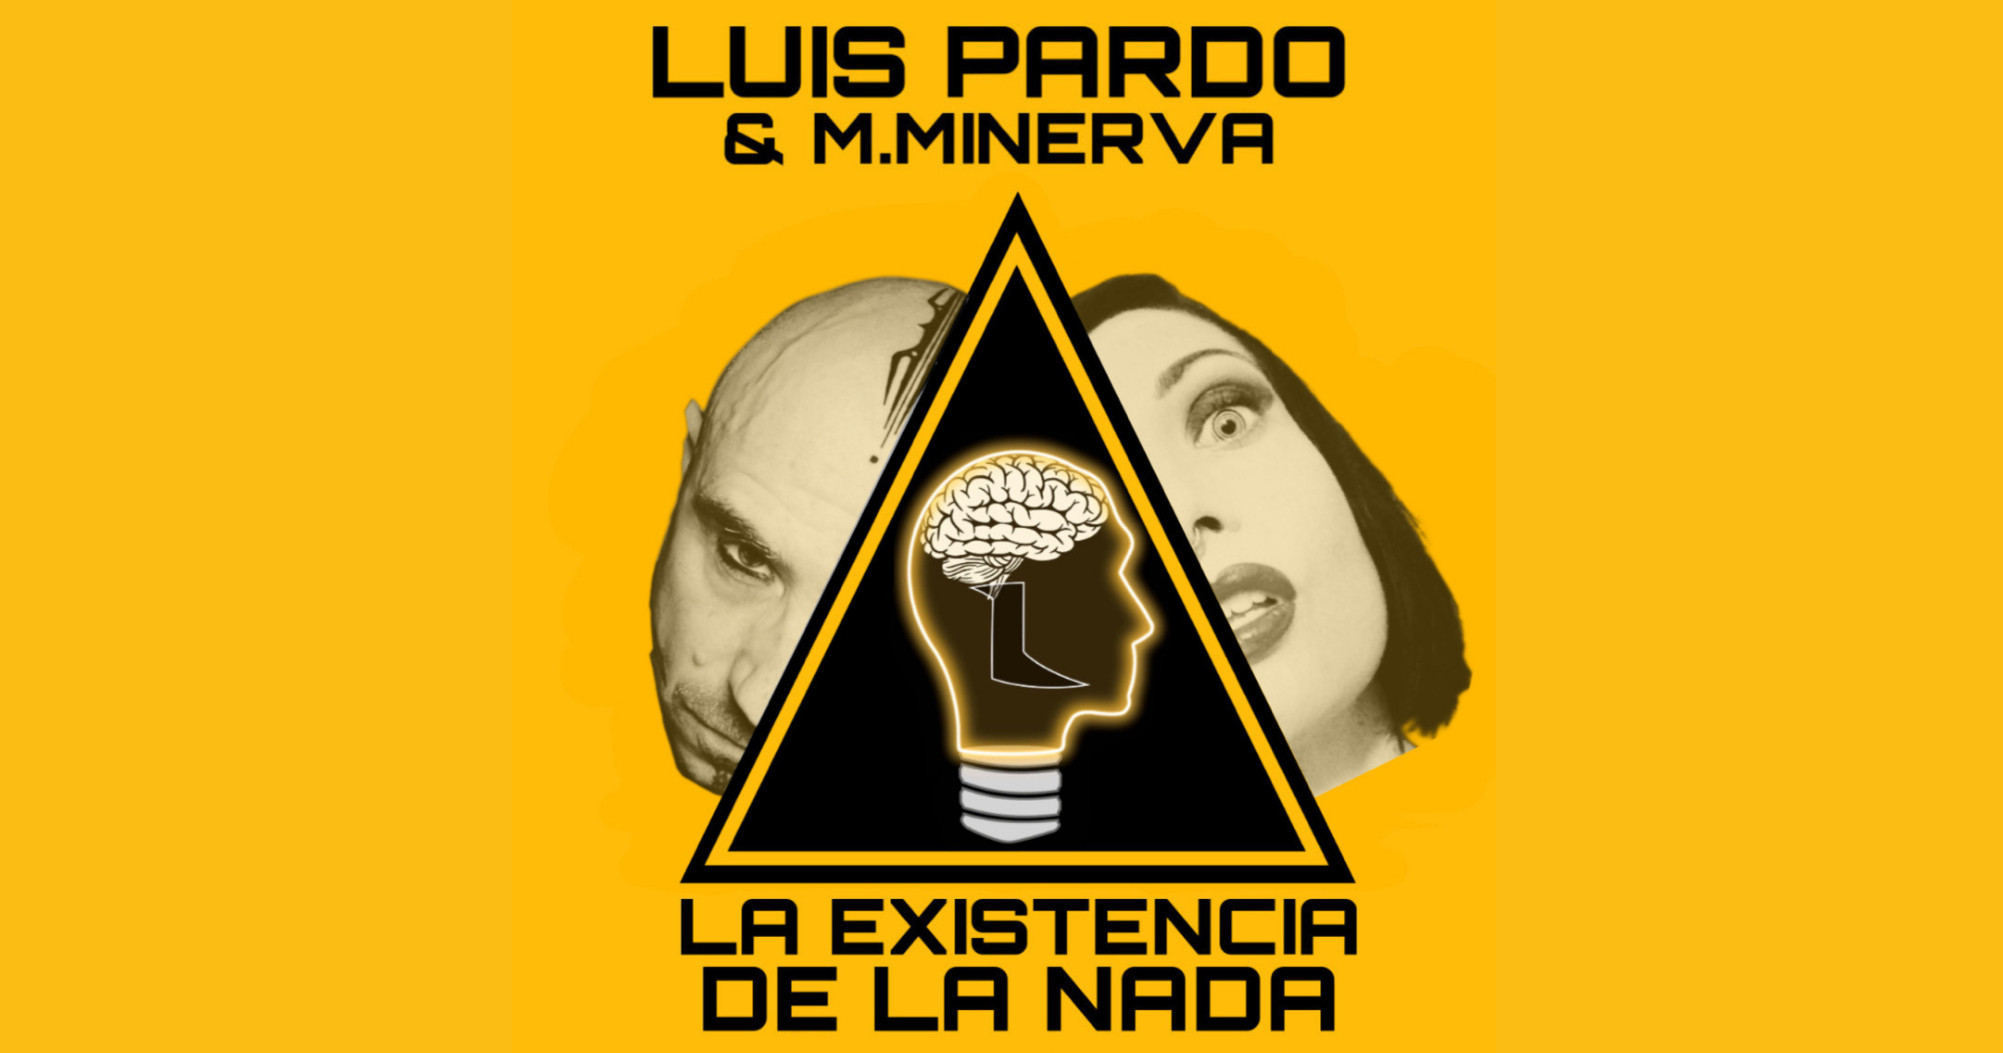 LUIS PARDO - LA EXISTENCIA DE LA NADA